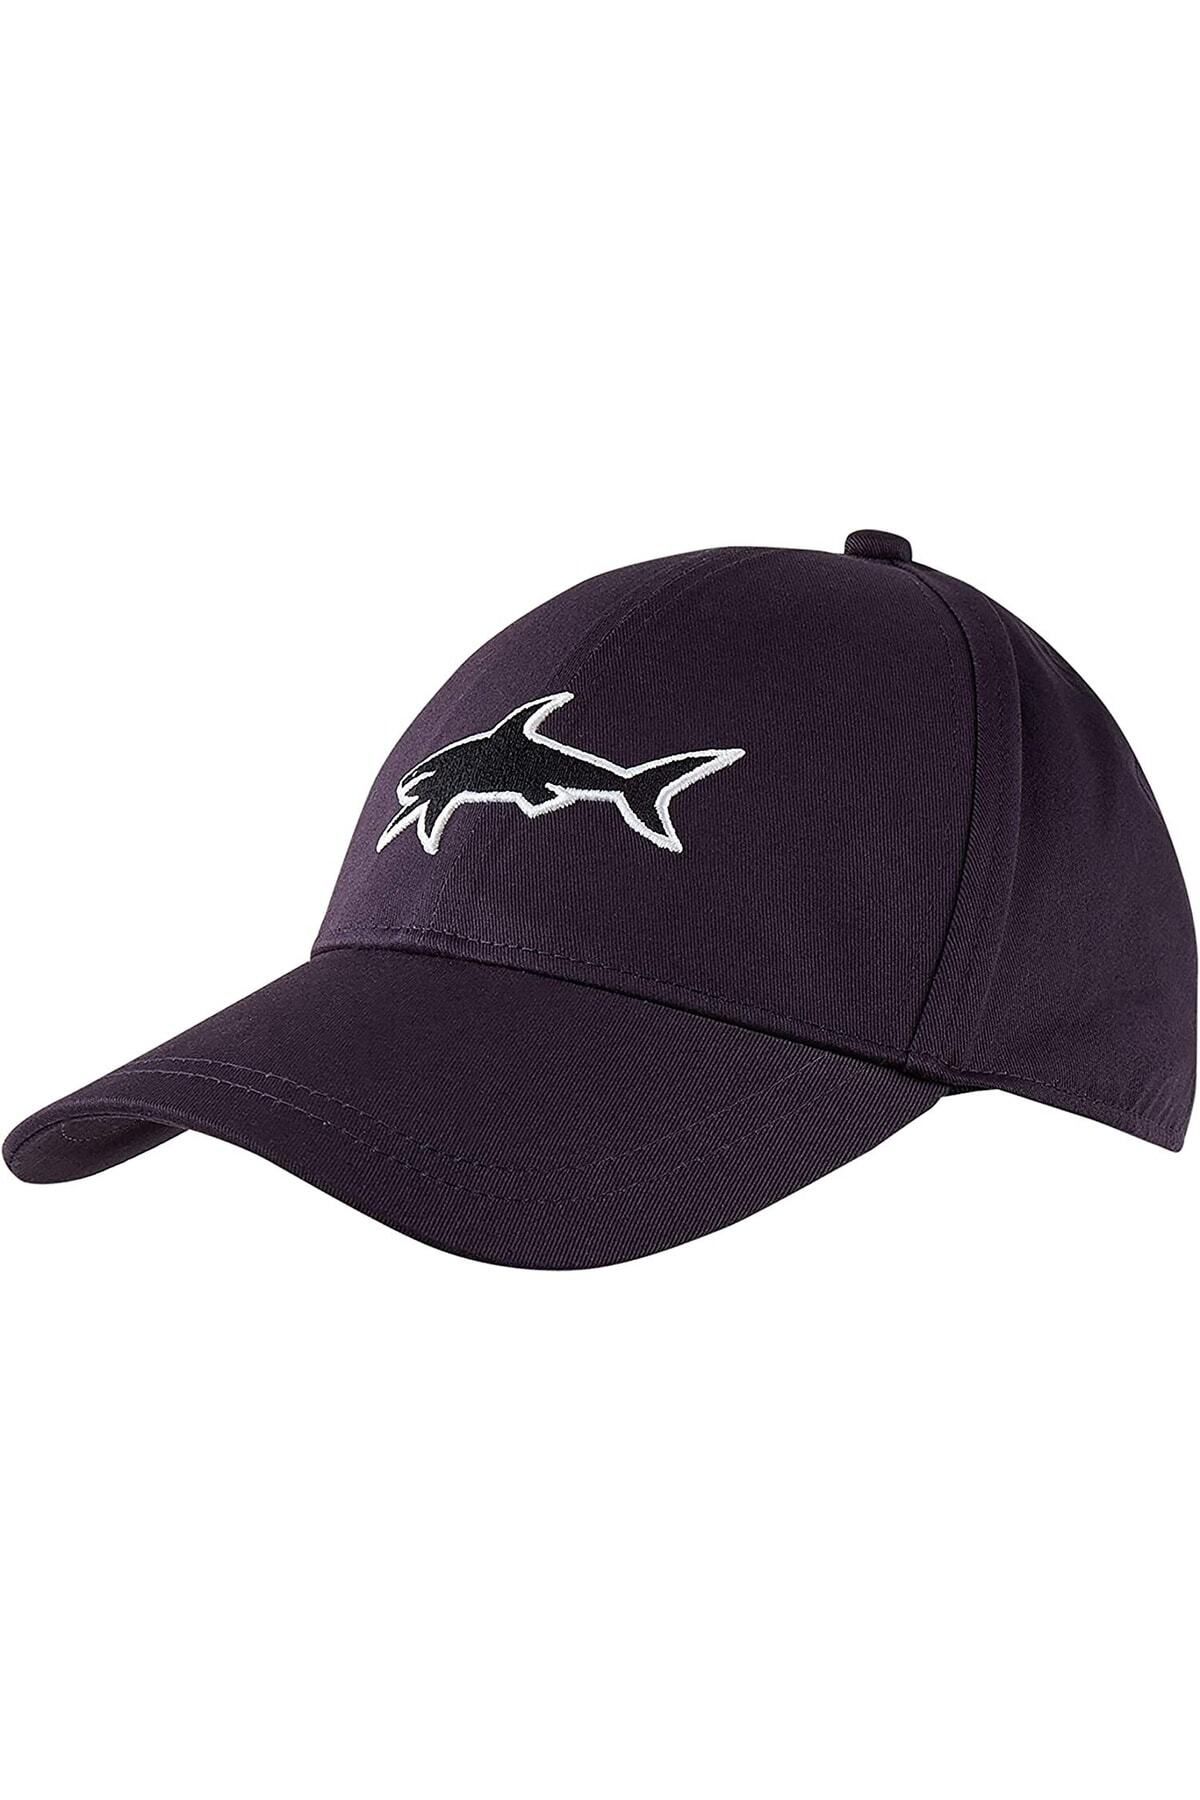 Paul&Shark Erkek Lacivert Spor Şapka Cop7103-050